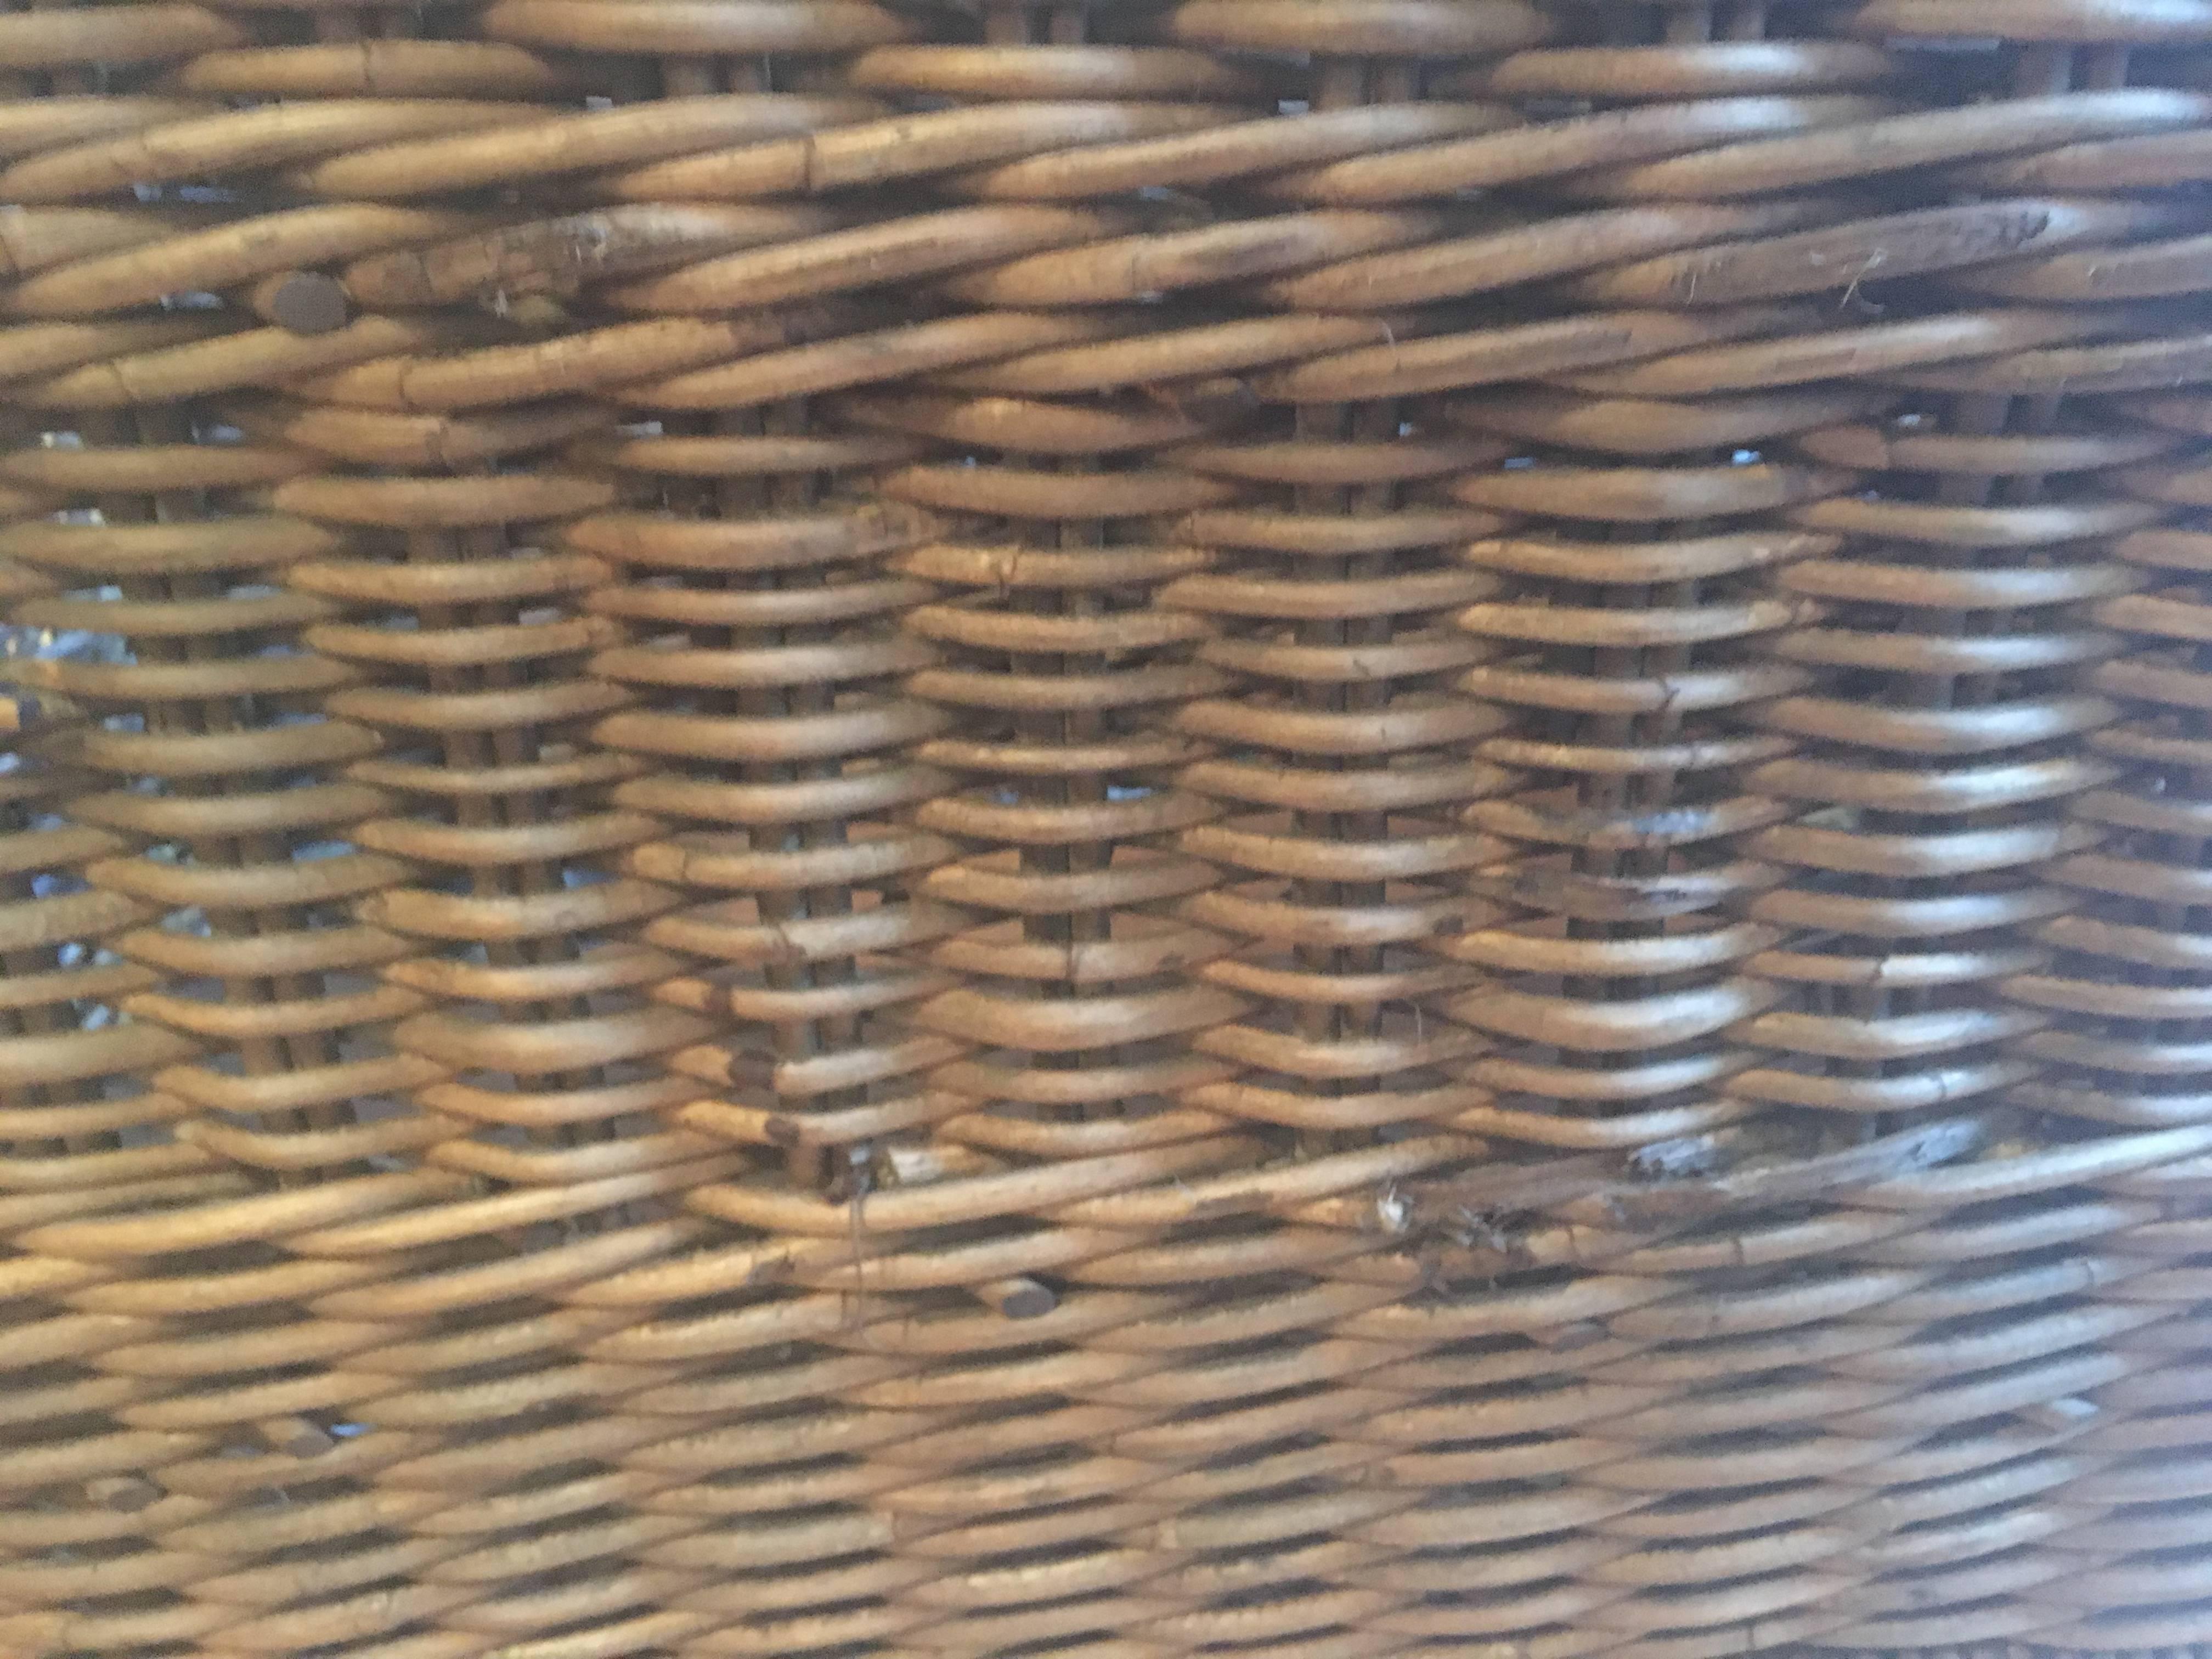 wicker basket with wheels